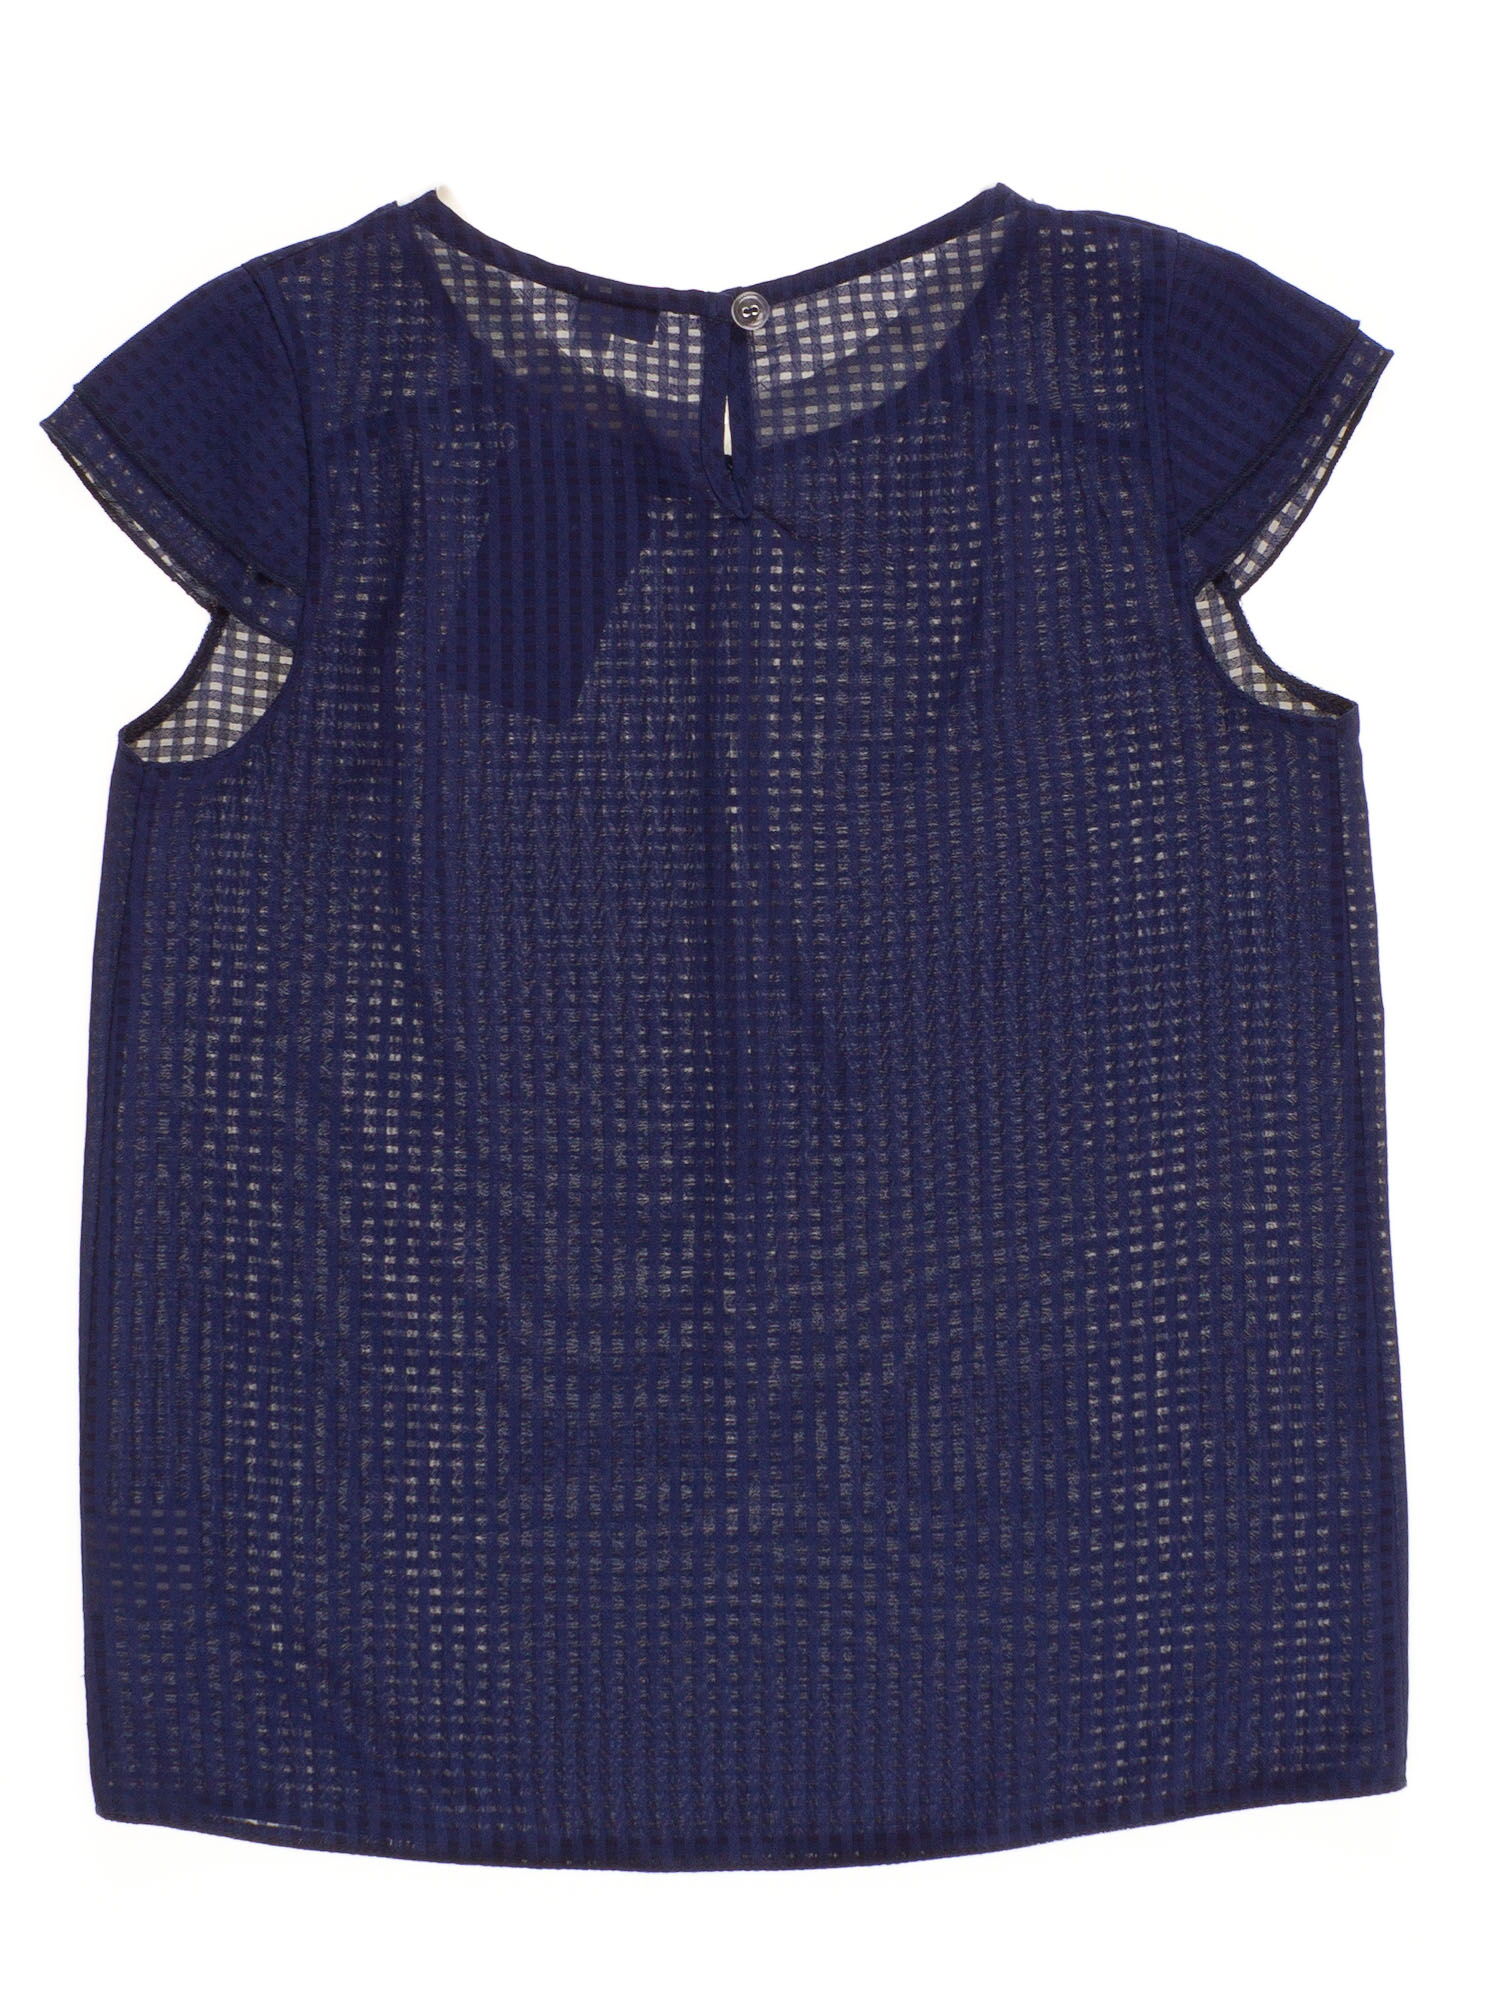 Блузка с коротким рукавом для девочки MEVIS синяя 2067 - размеры